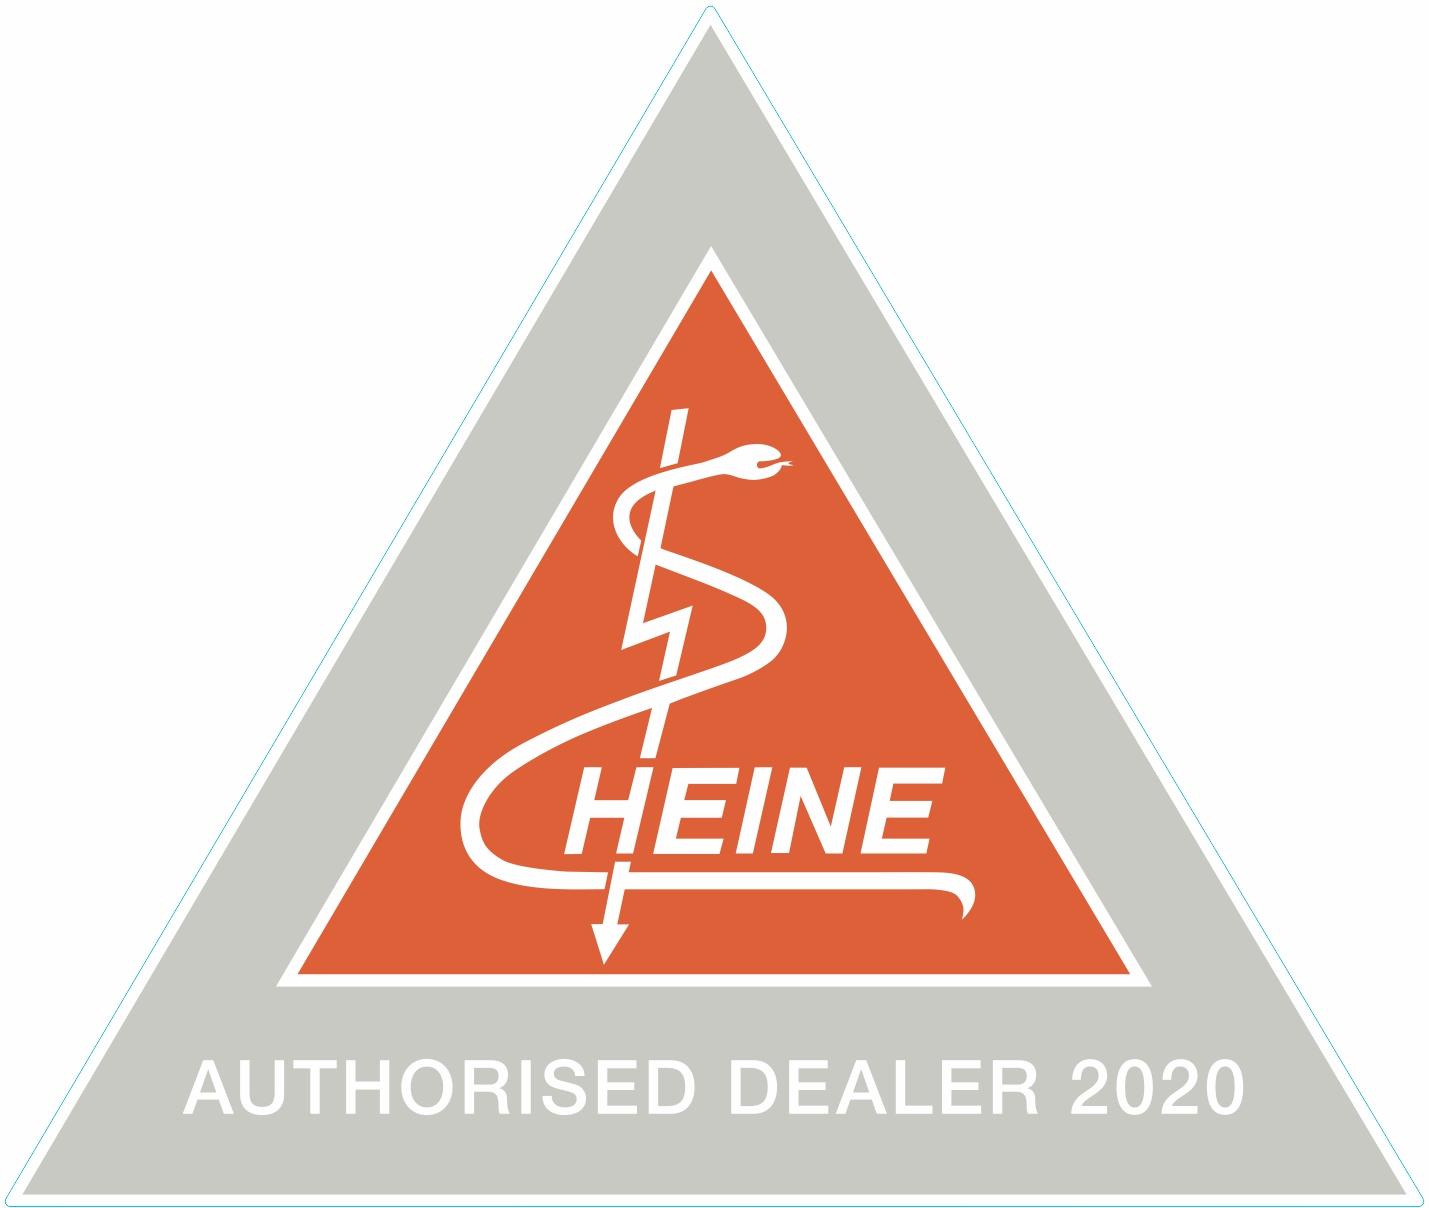 HEINE Authorised Dealer